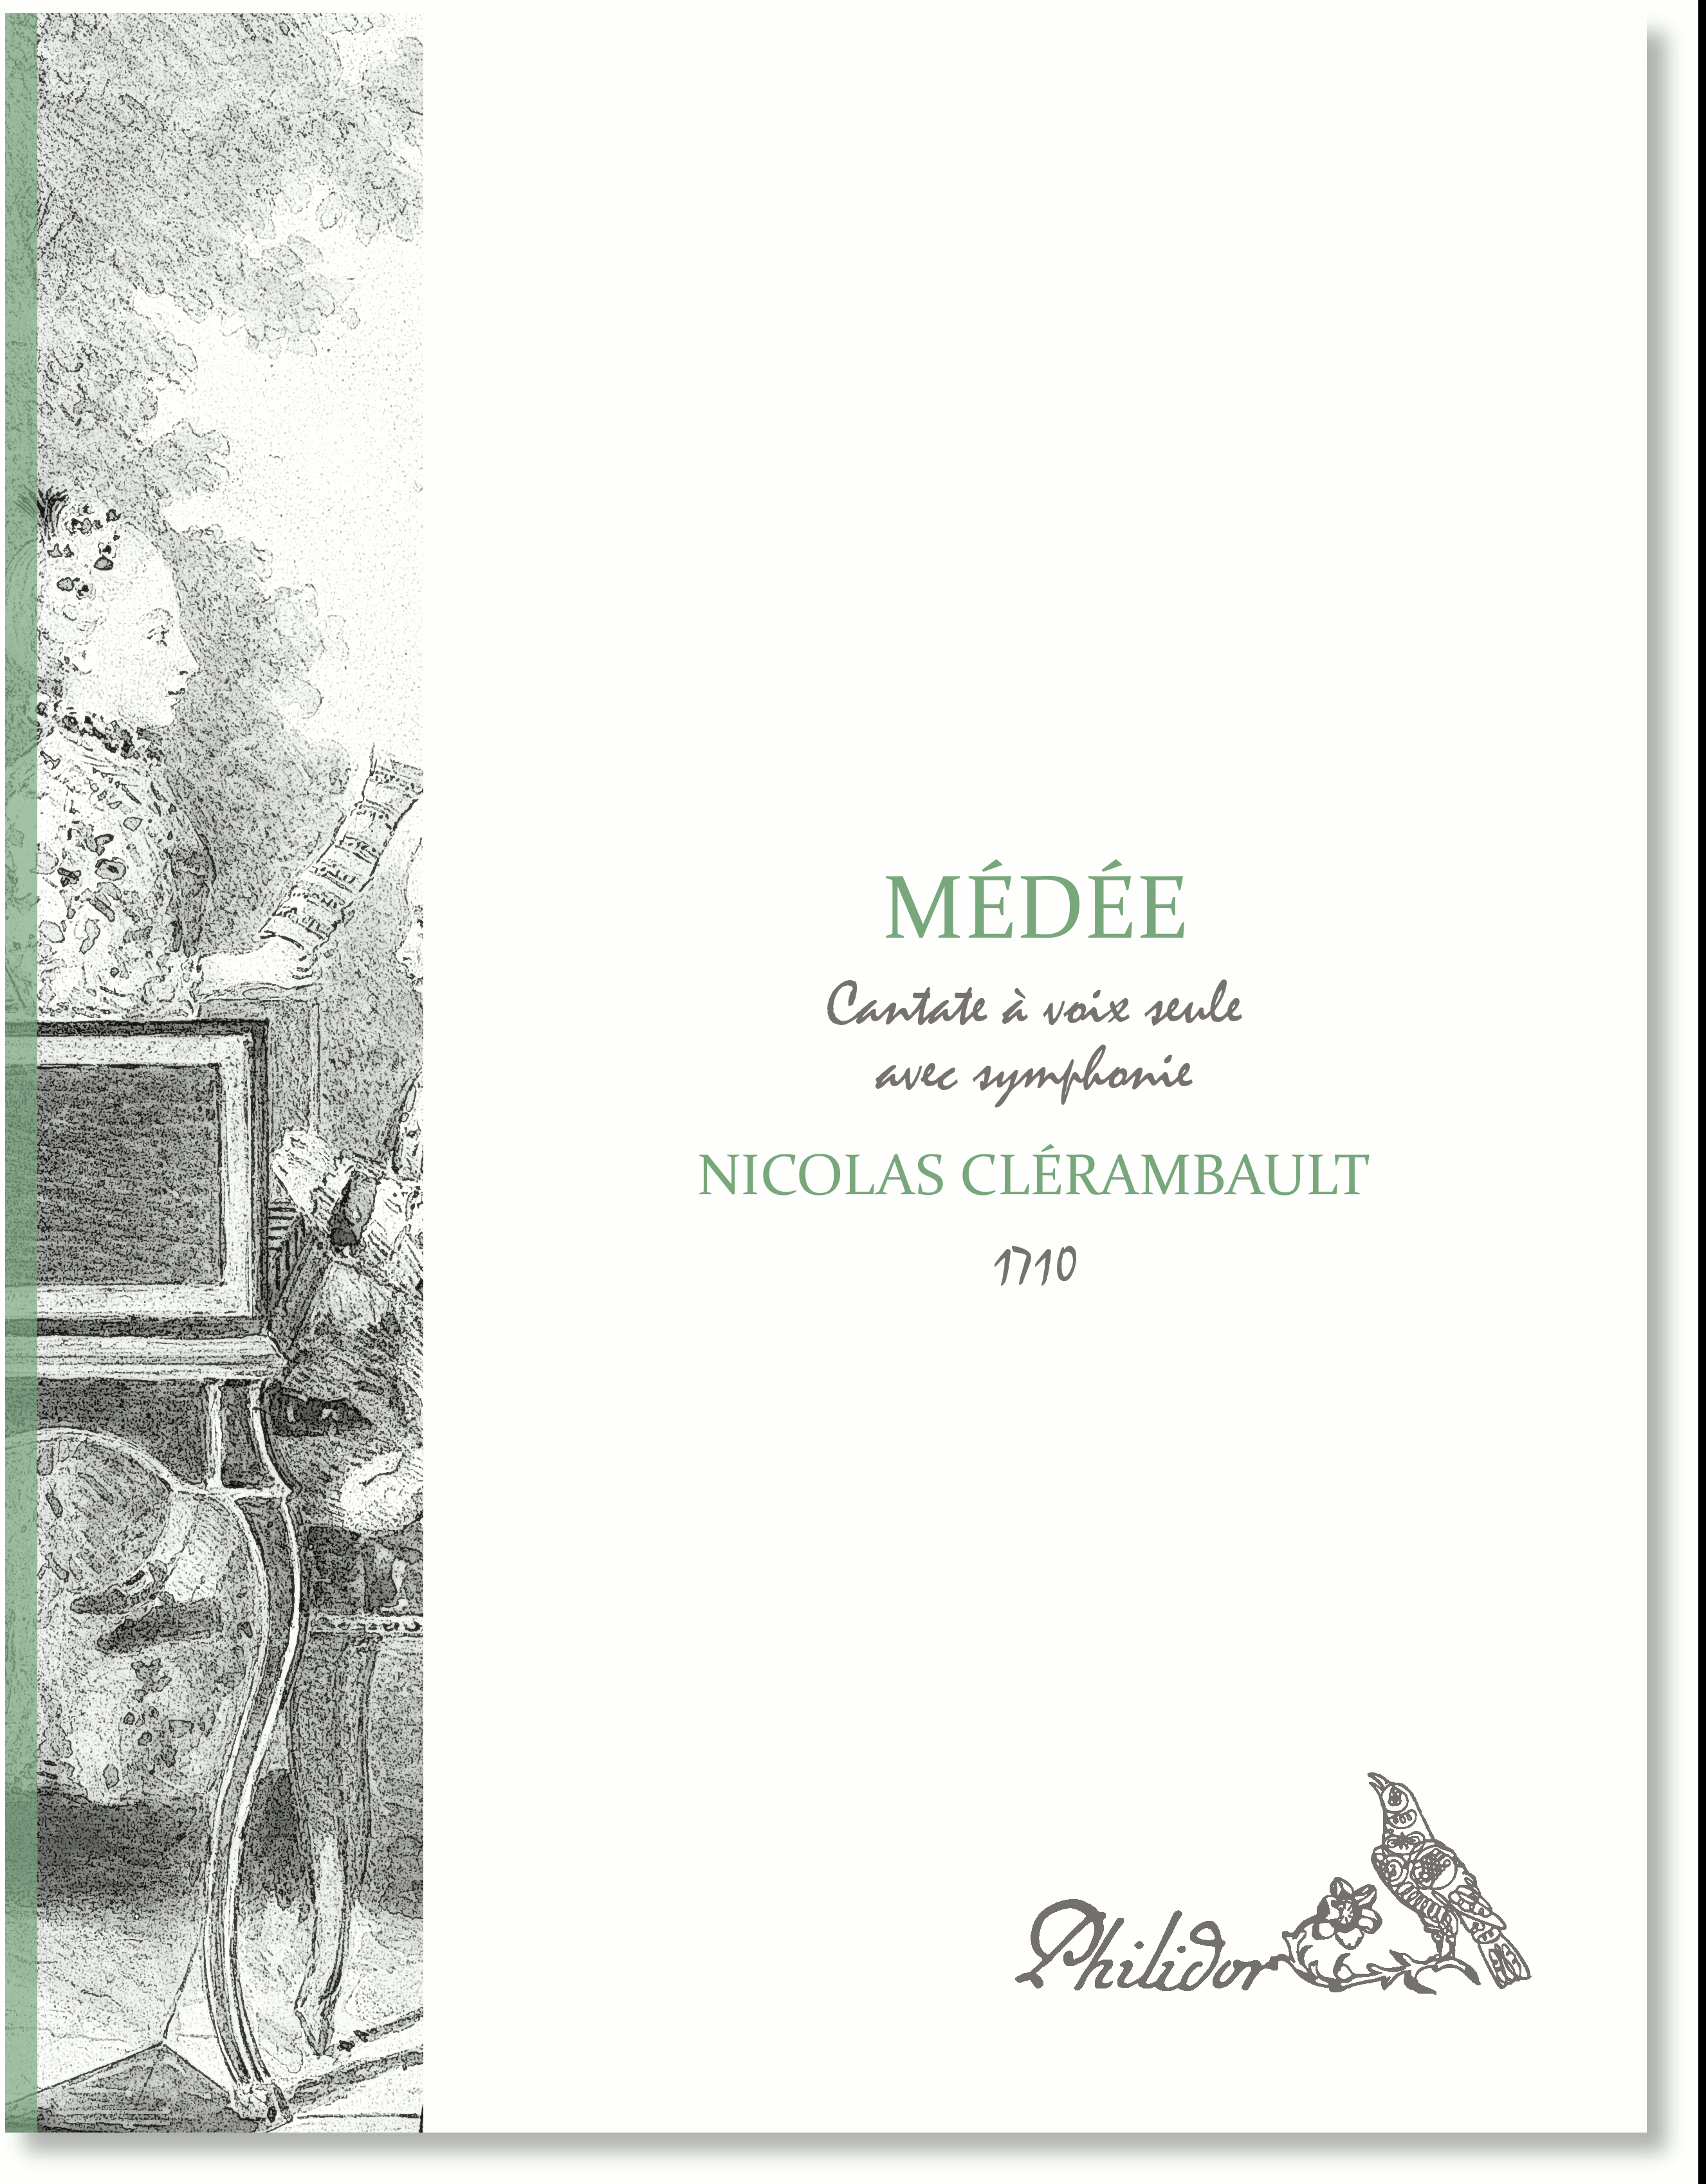 Clérambault, Louis Nicolas | Médée | Cantate pour voix seule avec simphonie (1710)